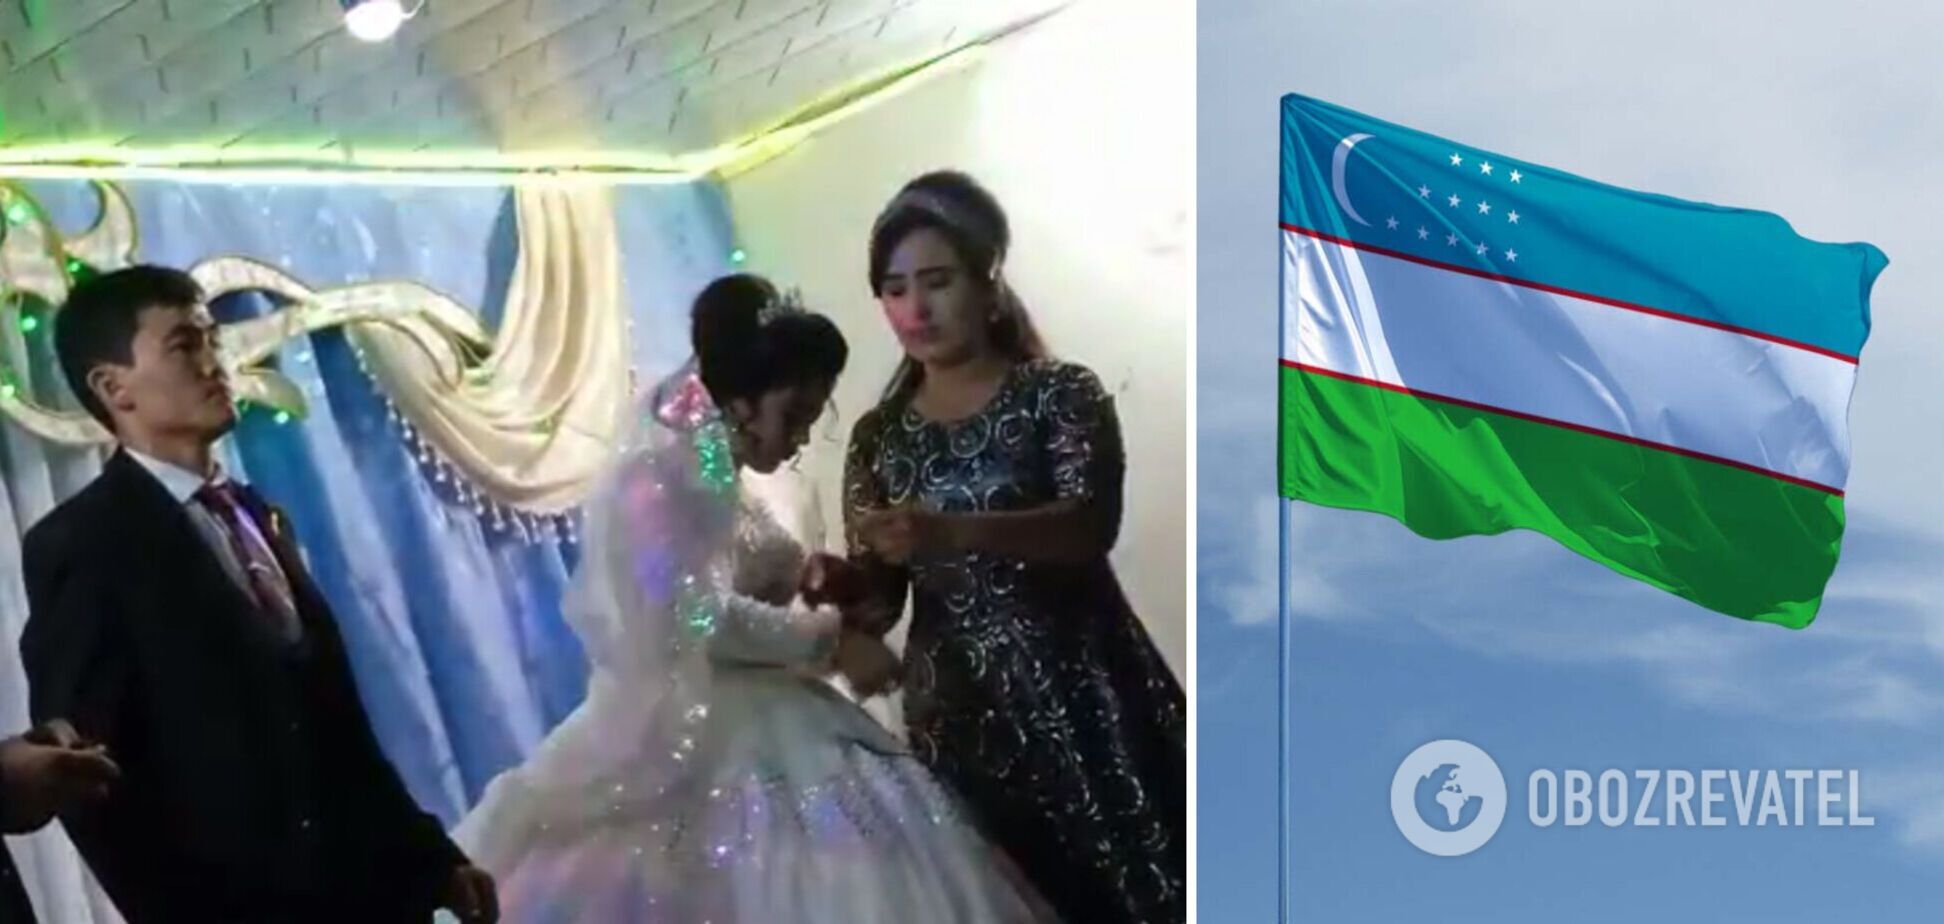 В Узбекистане жених ударил невесту по голове, потому что она обыграла его в свадебном конкурсе: появились подробности